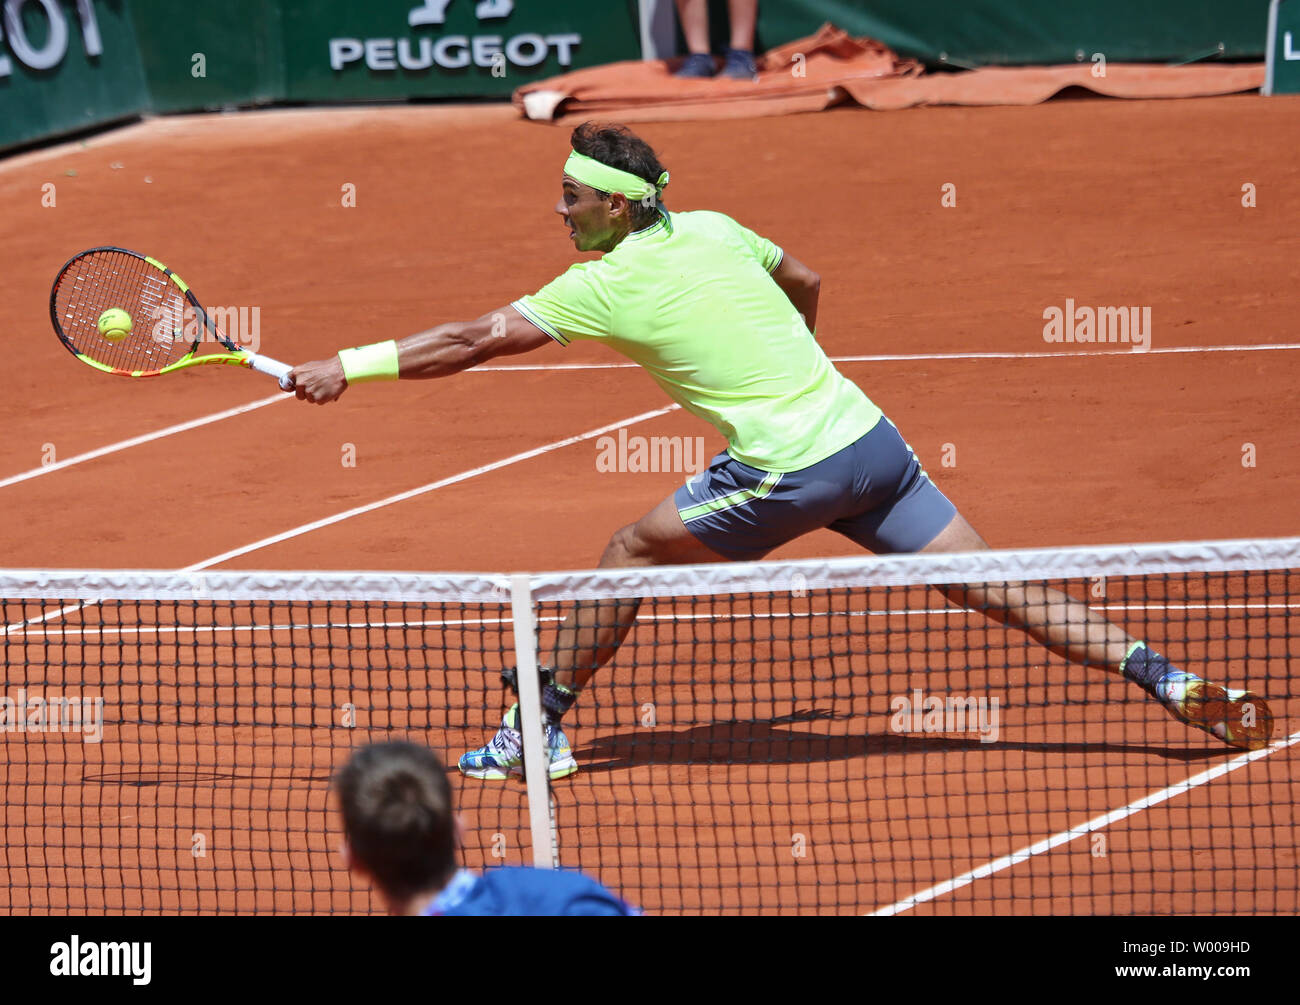 L'Espagne de Rafael Nadal frappe un coup lors de son Open de France men's deuxième tour contre Yannick Maden de l'Allemagne à Roland Garros à Paris le 29 mai 2019. Nadal défait Maden 6-1, 6-2, 6-4) pour passer à la troisième ronde. Photo de David Silpa/UPI Banque D'Images